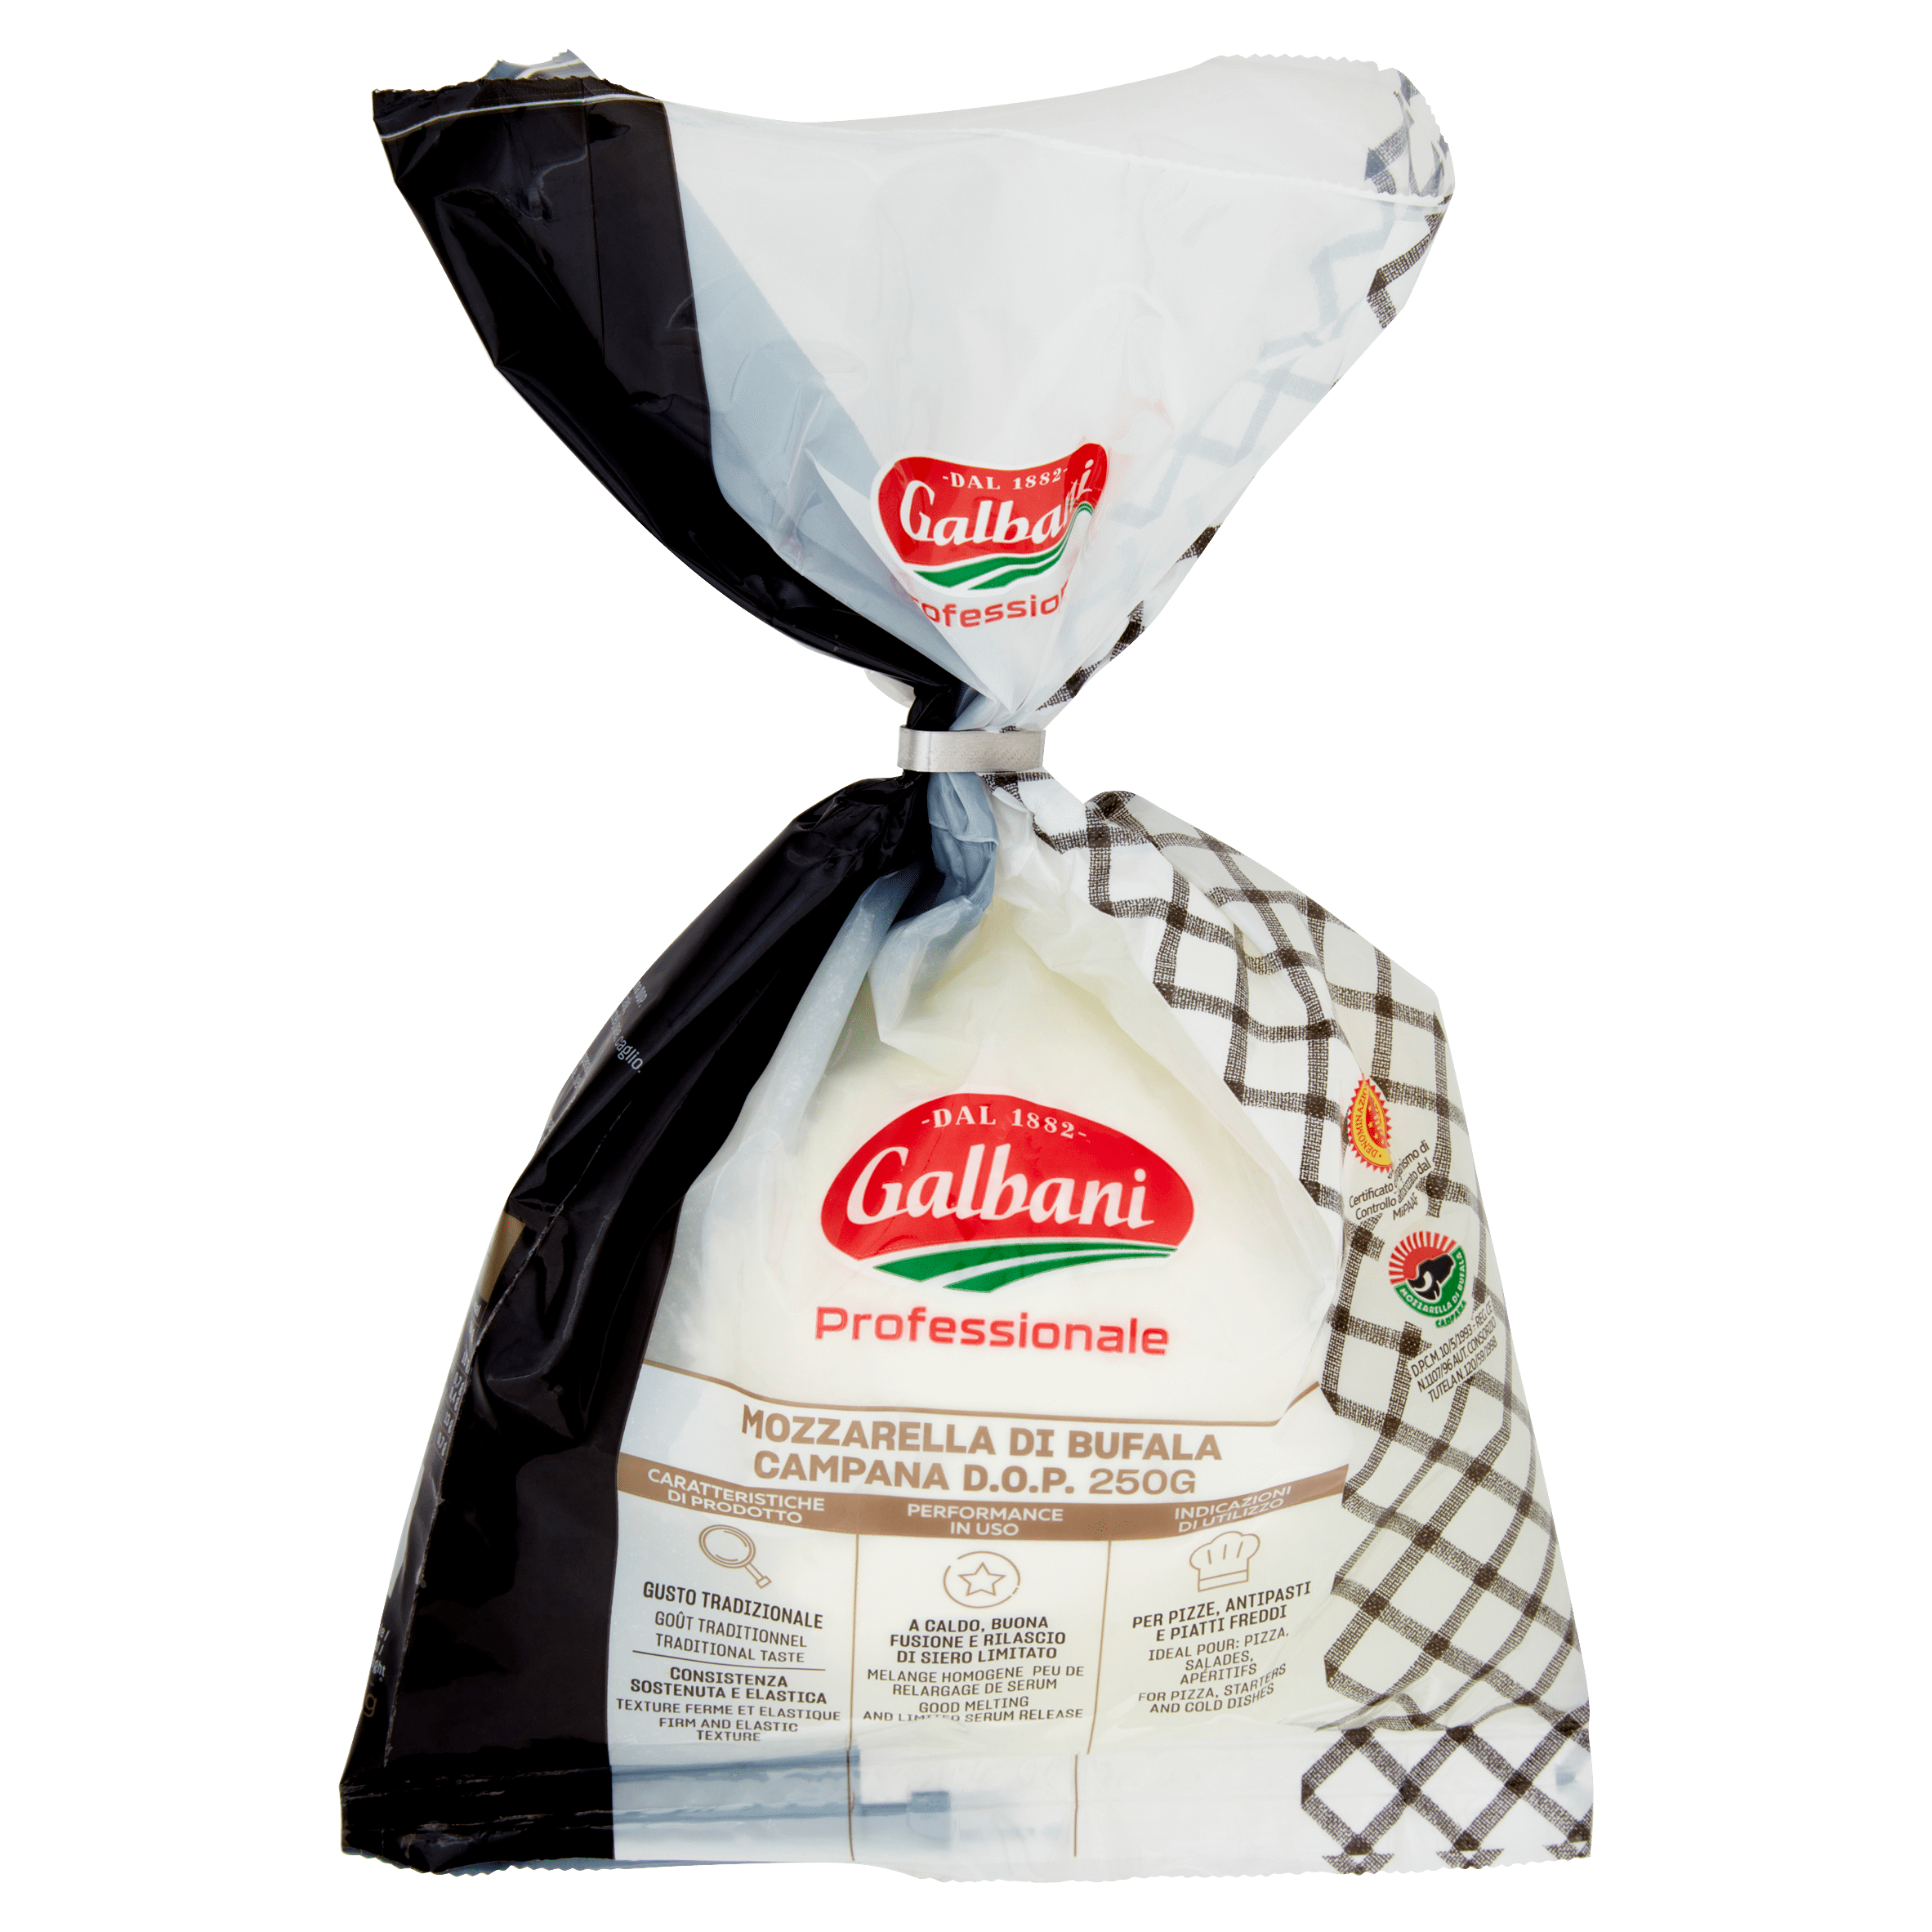 Galbani Professionale Mozzarella di Bufala Campana D.O.P. 250 g